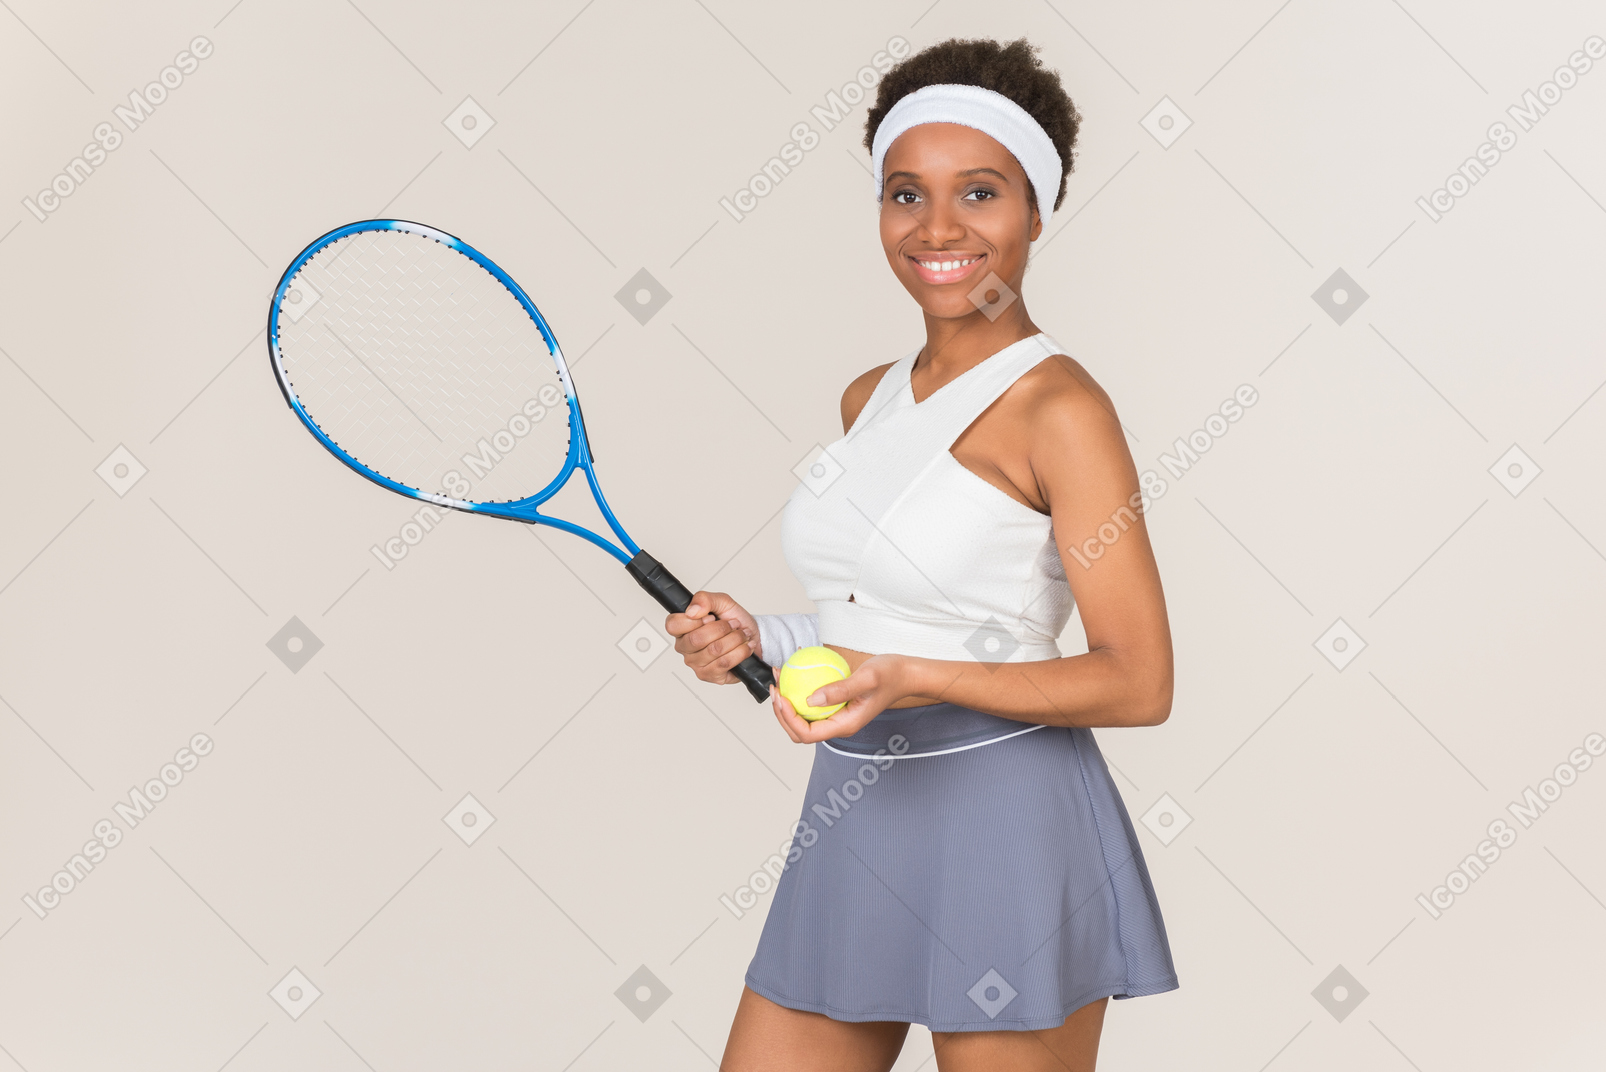 테니스는 정말 내 스포츠니까